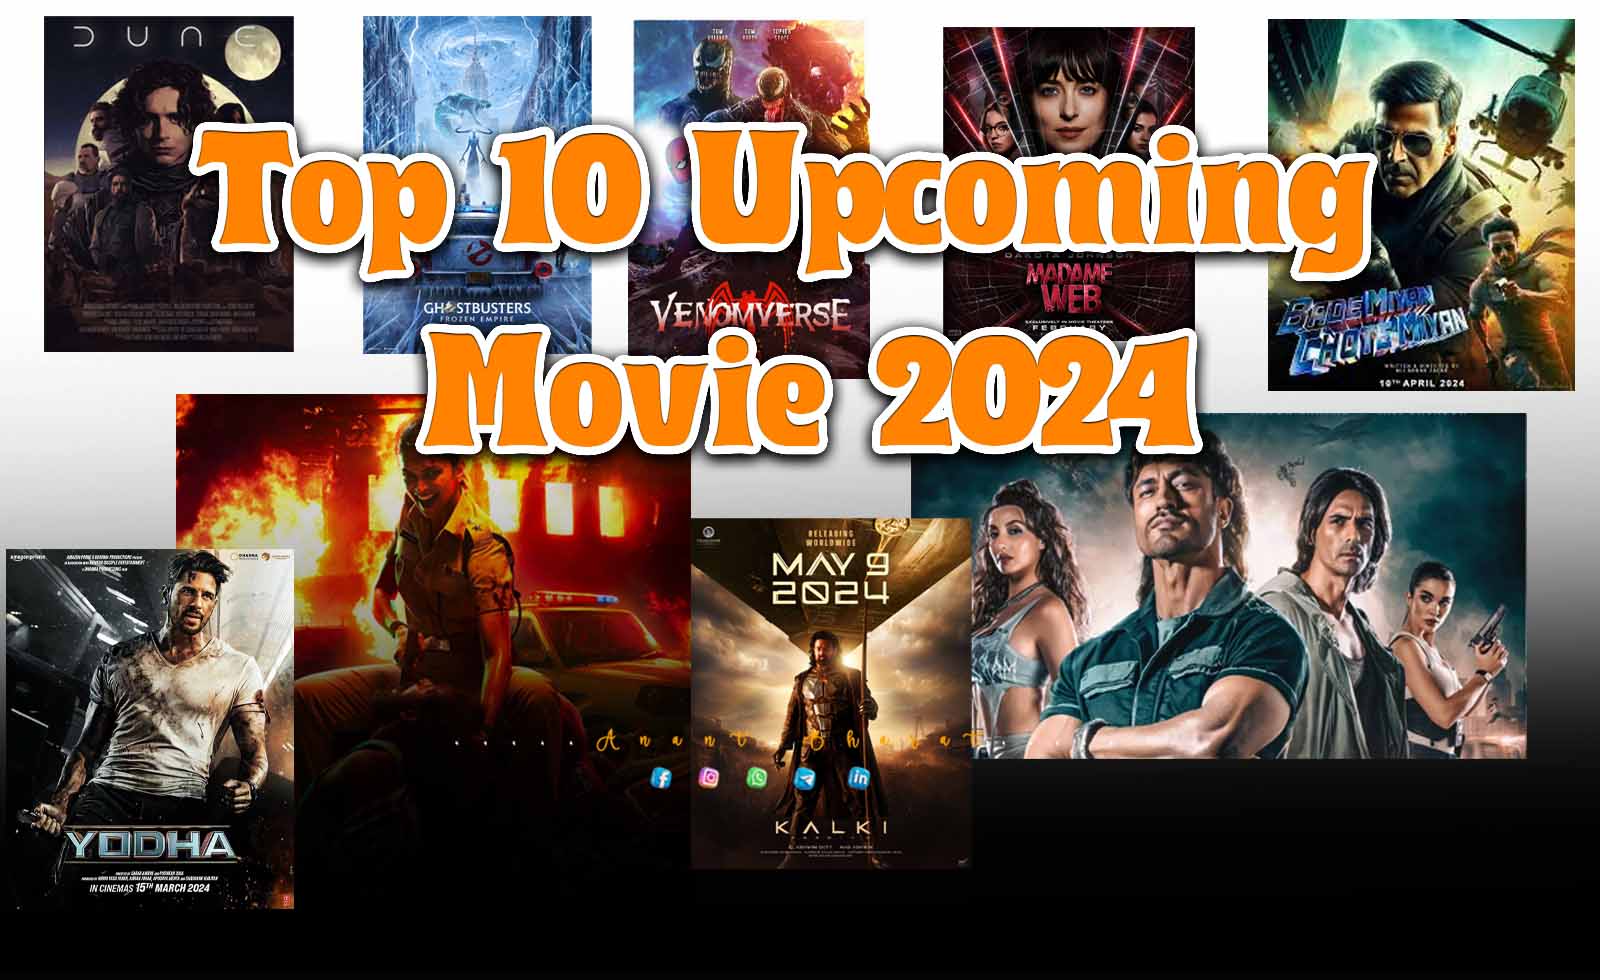 Top 10 Movie 2024 साल 2024 में धमाल मचाने आ रही ये 10 फिल्में